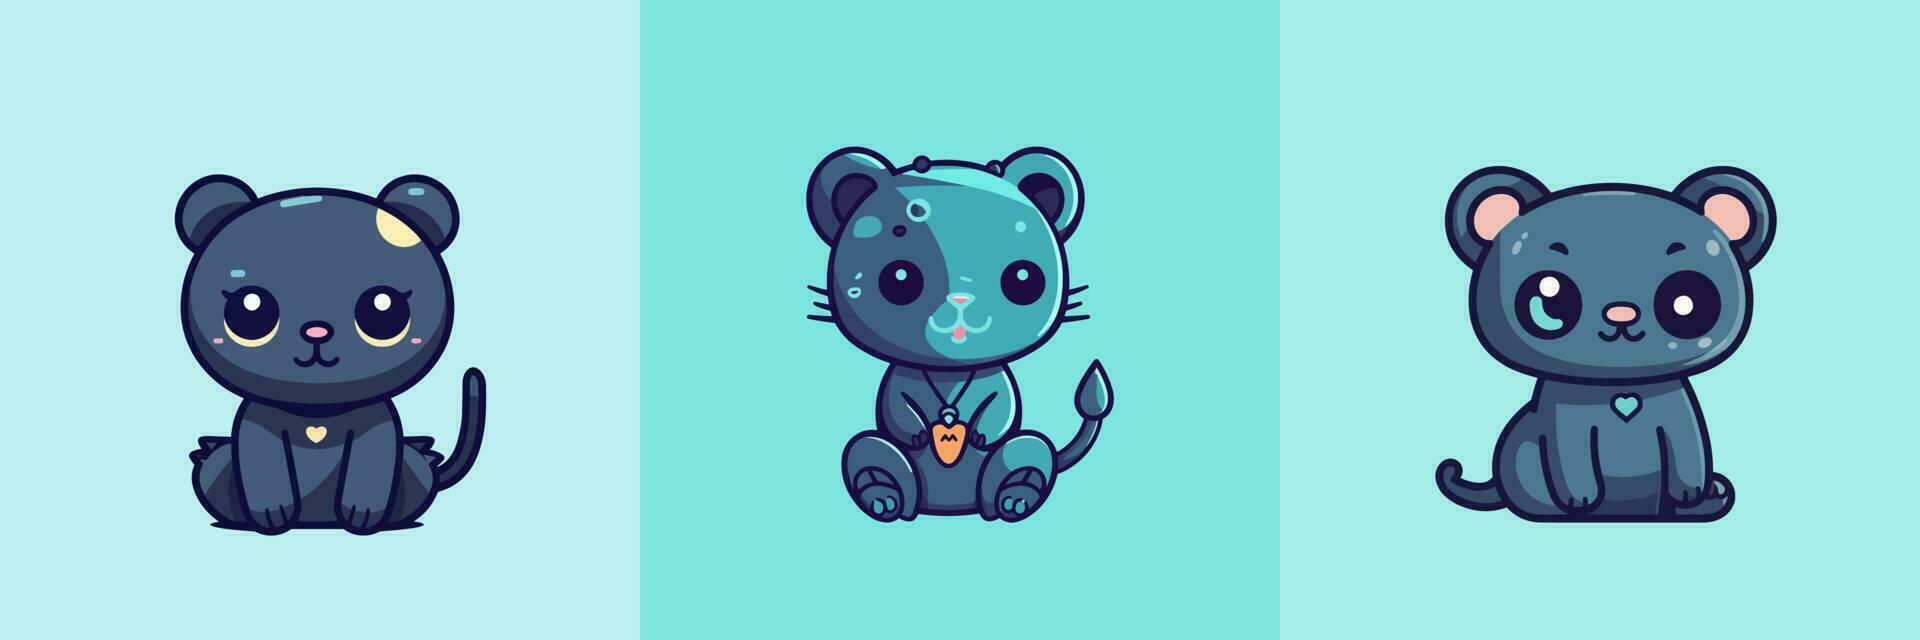 Cute kawaii panther cartoon illustration vector